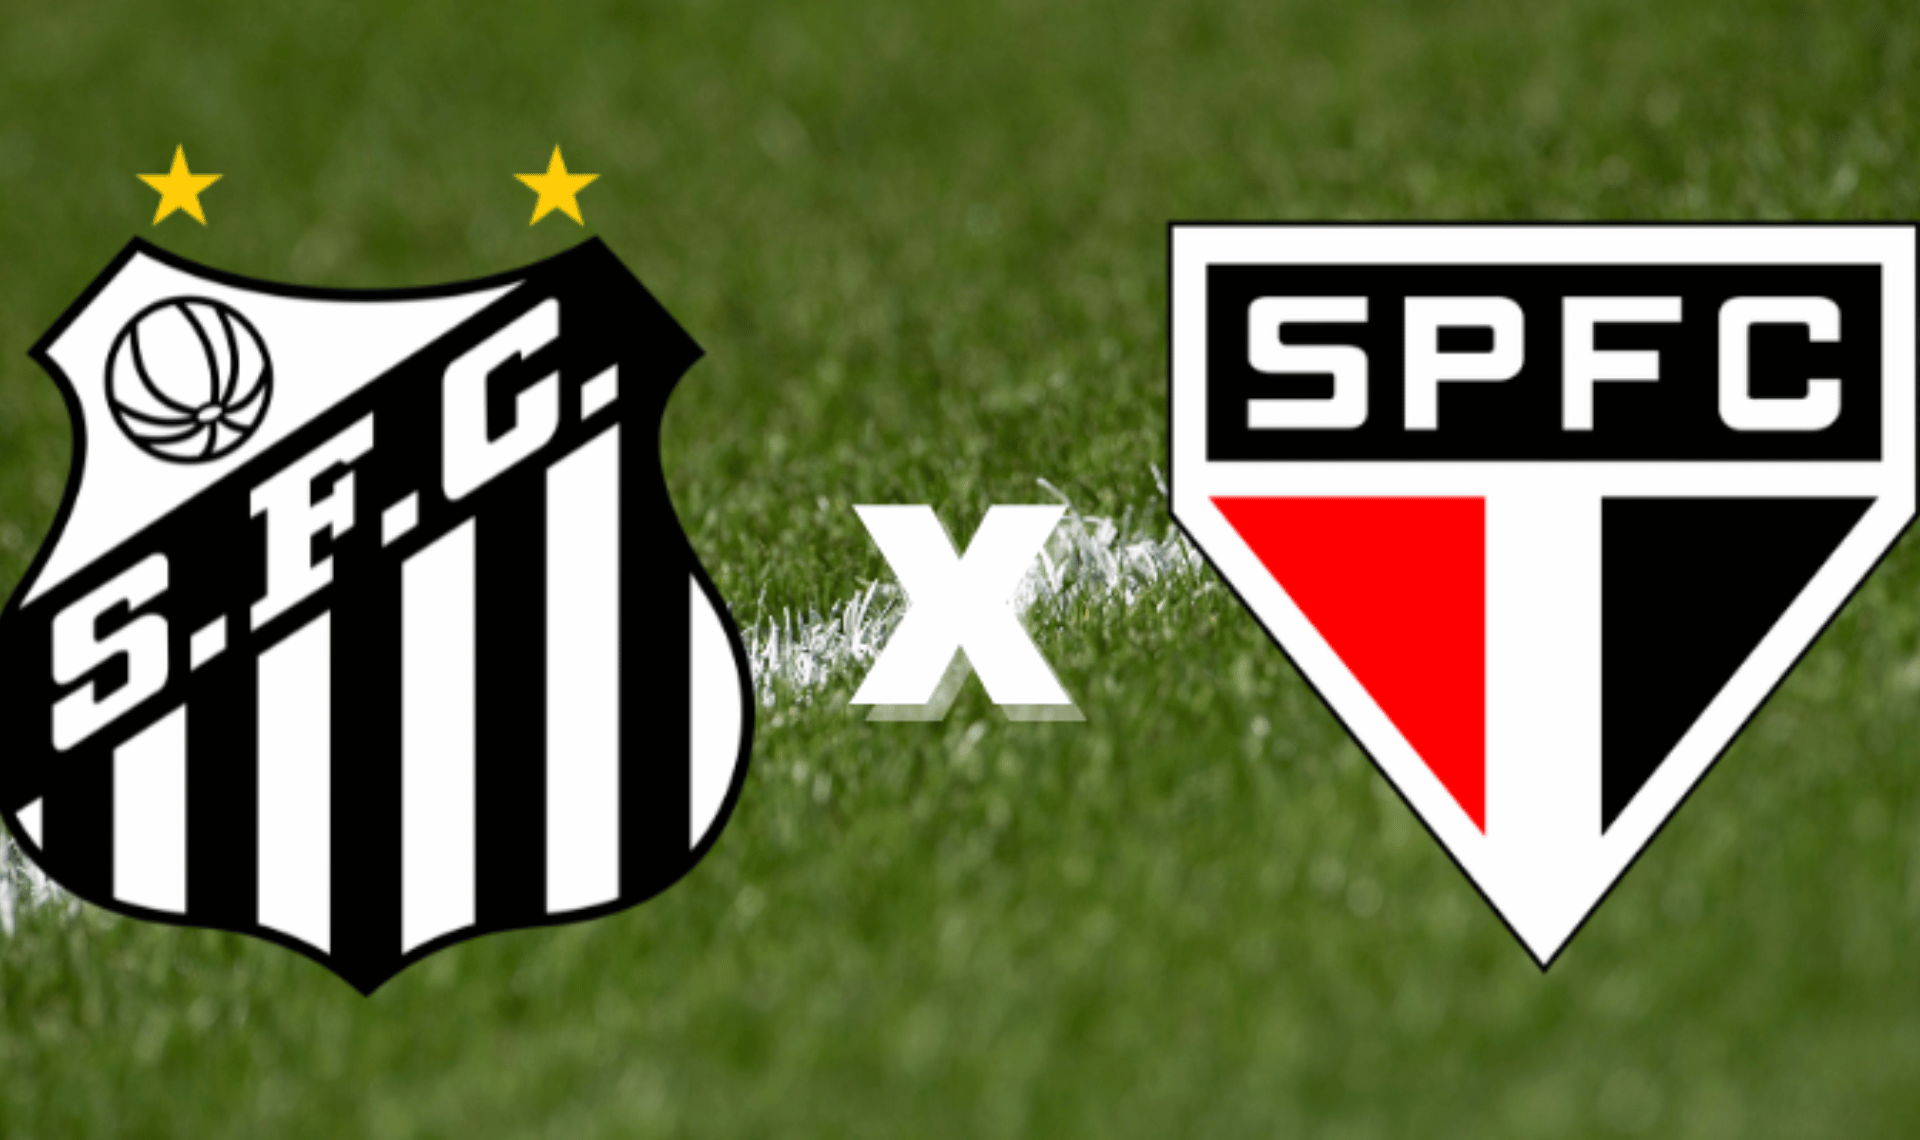 San-São Santos vs. São Paulo